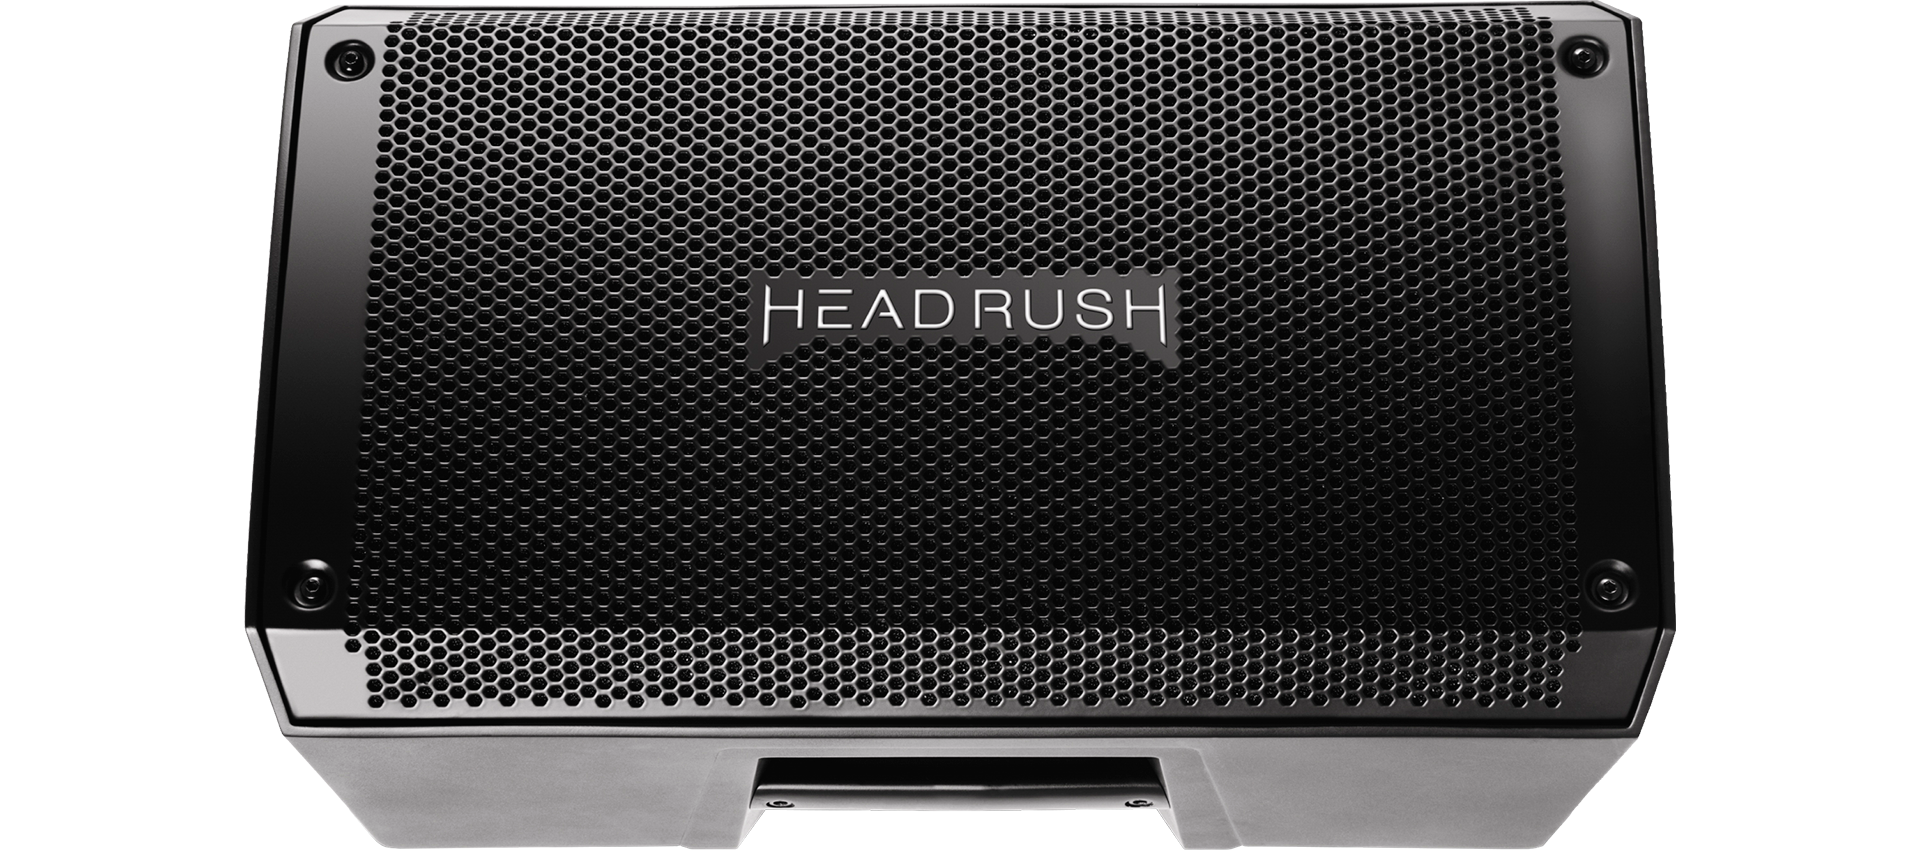 Headrush FRFR-108 aktiv Lautsprecher